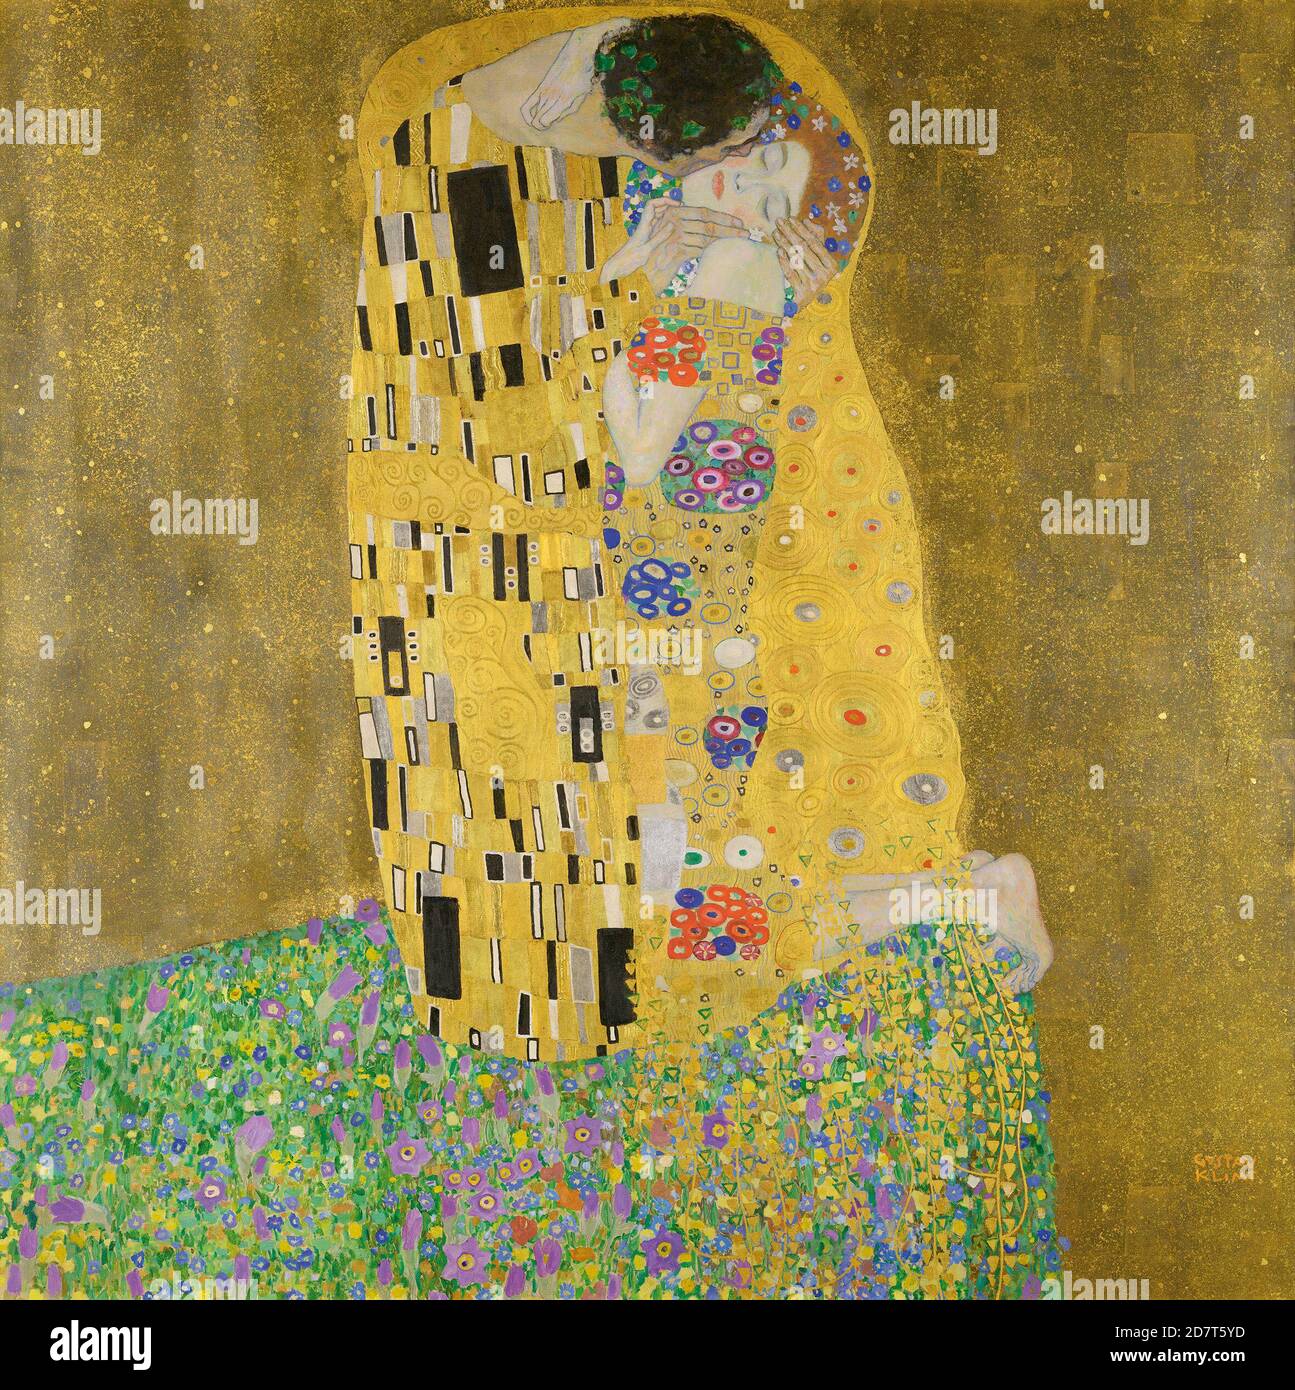 Titel: Der Kuss Ersteller: Gustav Klimt Datum: 1907 Medium: Öl auf Leinwand Maße: 180 x 180 cm Ort: Osterreichische Galerie Belvedere, Wien Stockfoto